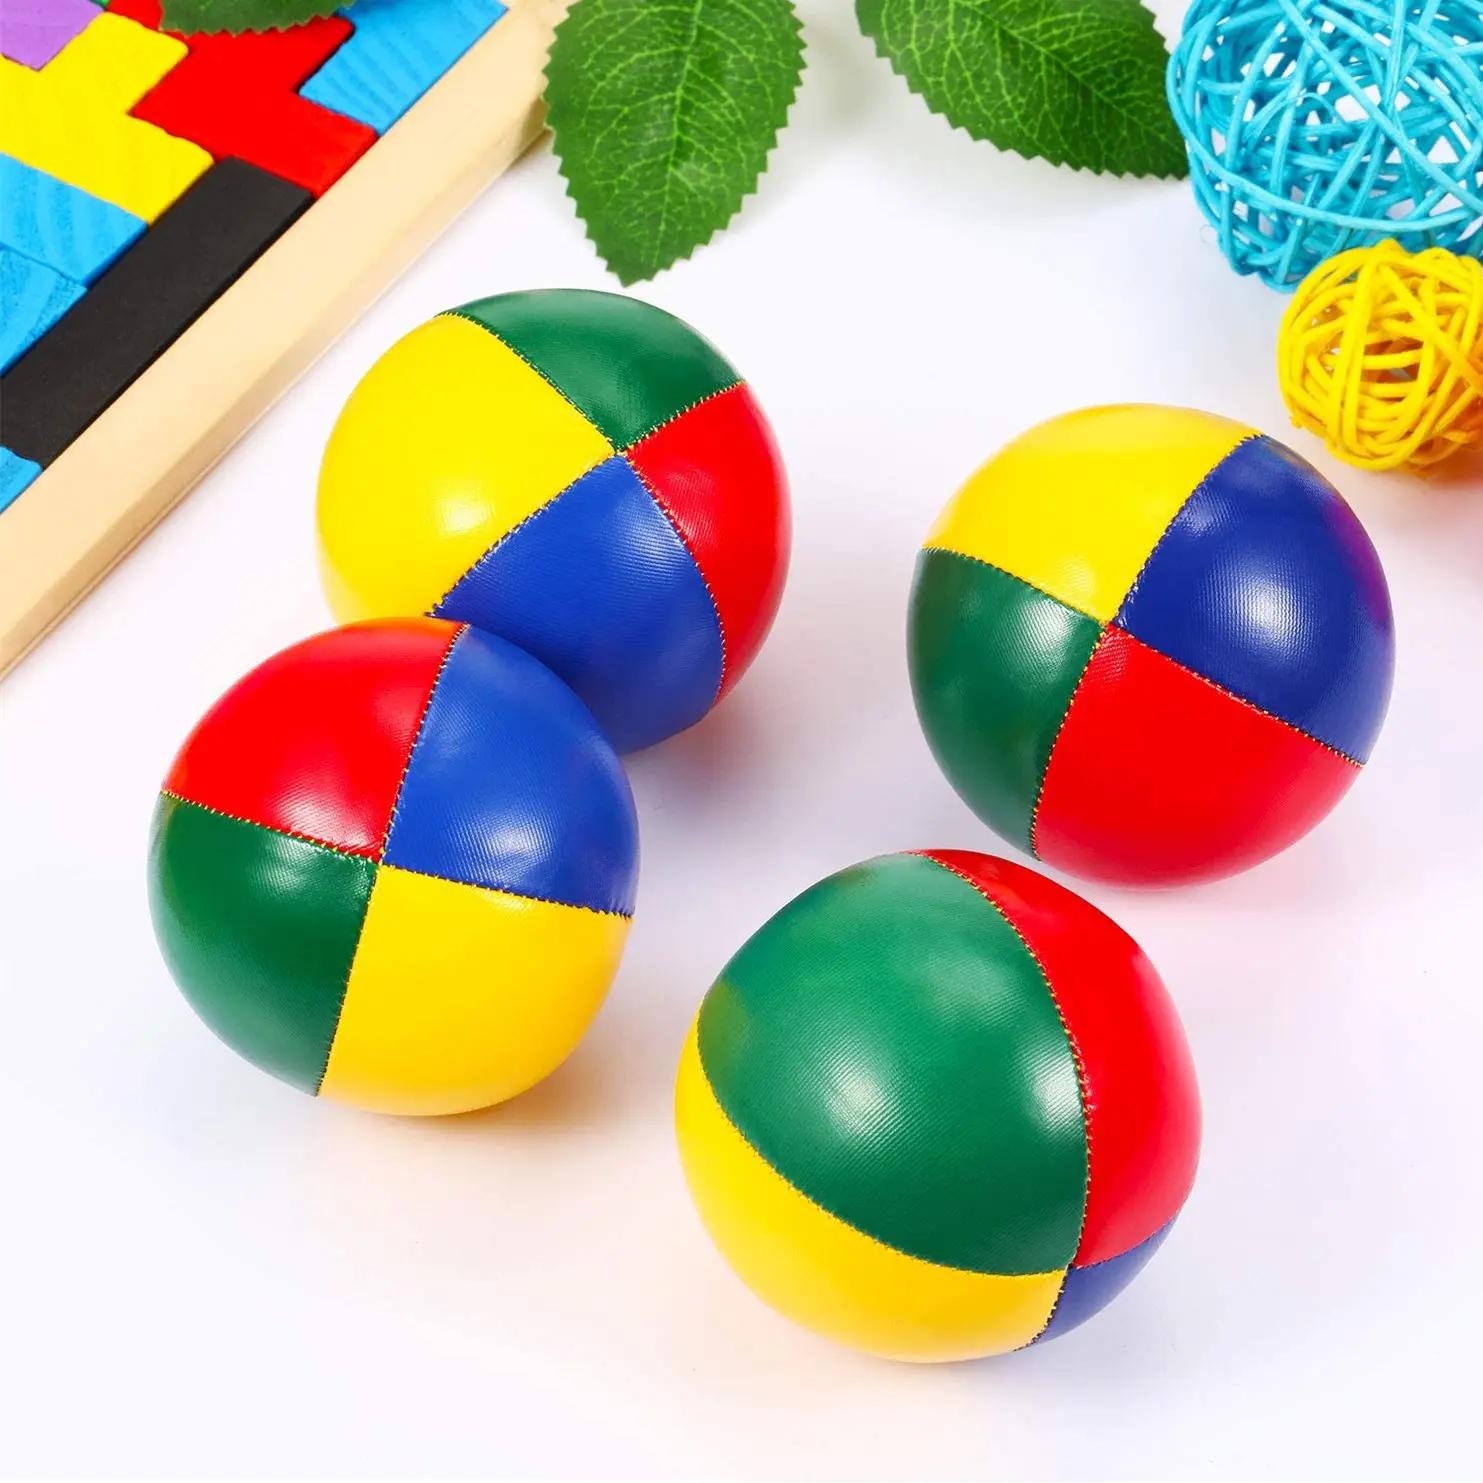 Nuevo diseño, pelota de malabares de cuero Pu suave y duradera, juego de bolas de malabares empaquetadas coloridas personalizadas, juegos divertidos para adultos y niños